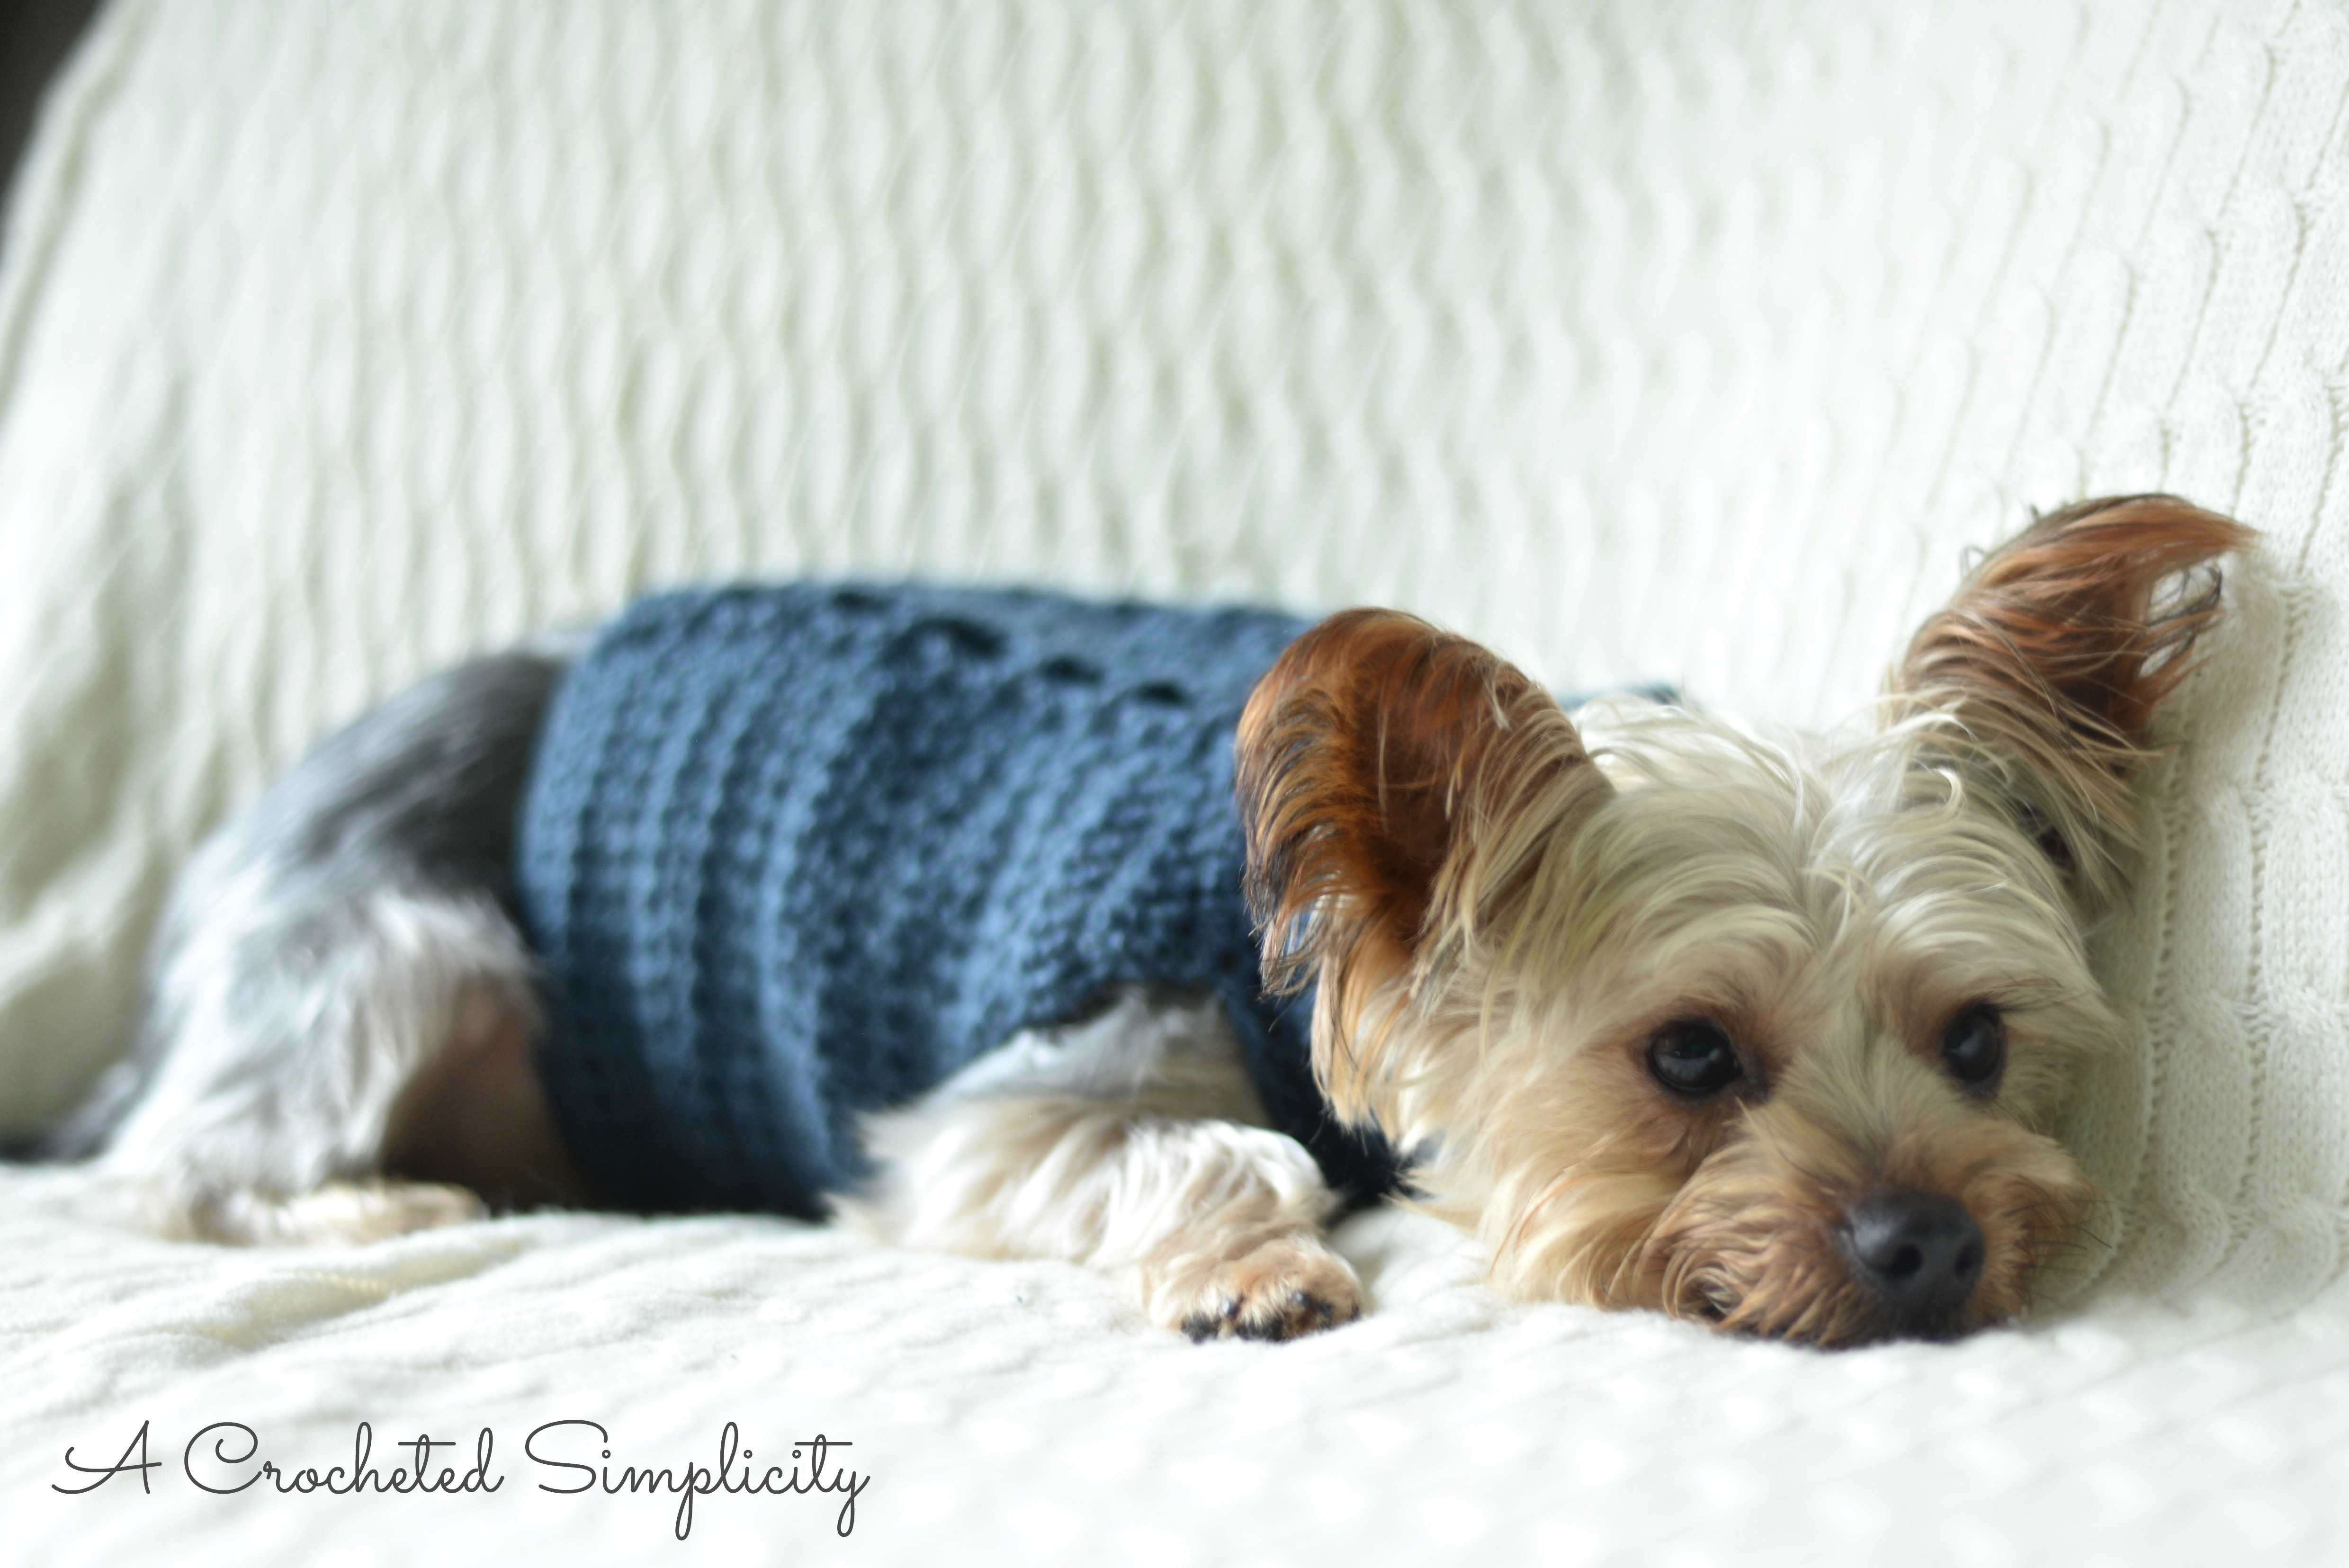 Free Crochet Dog Sweater Pattern Free Charity Crochet Pattern Cabled Dog Sweater A Crocheted